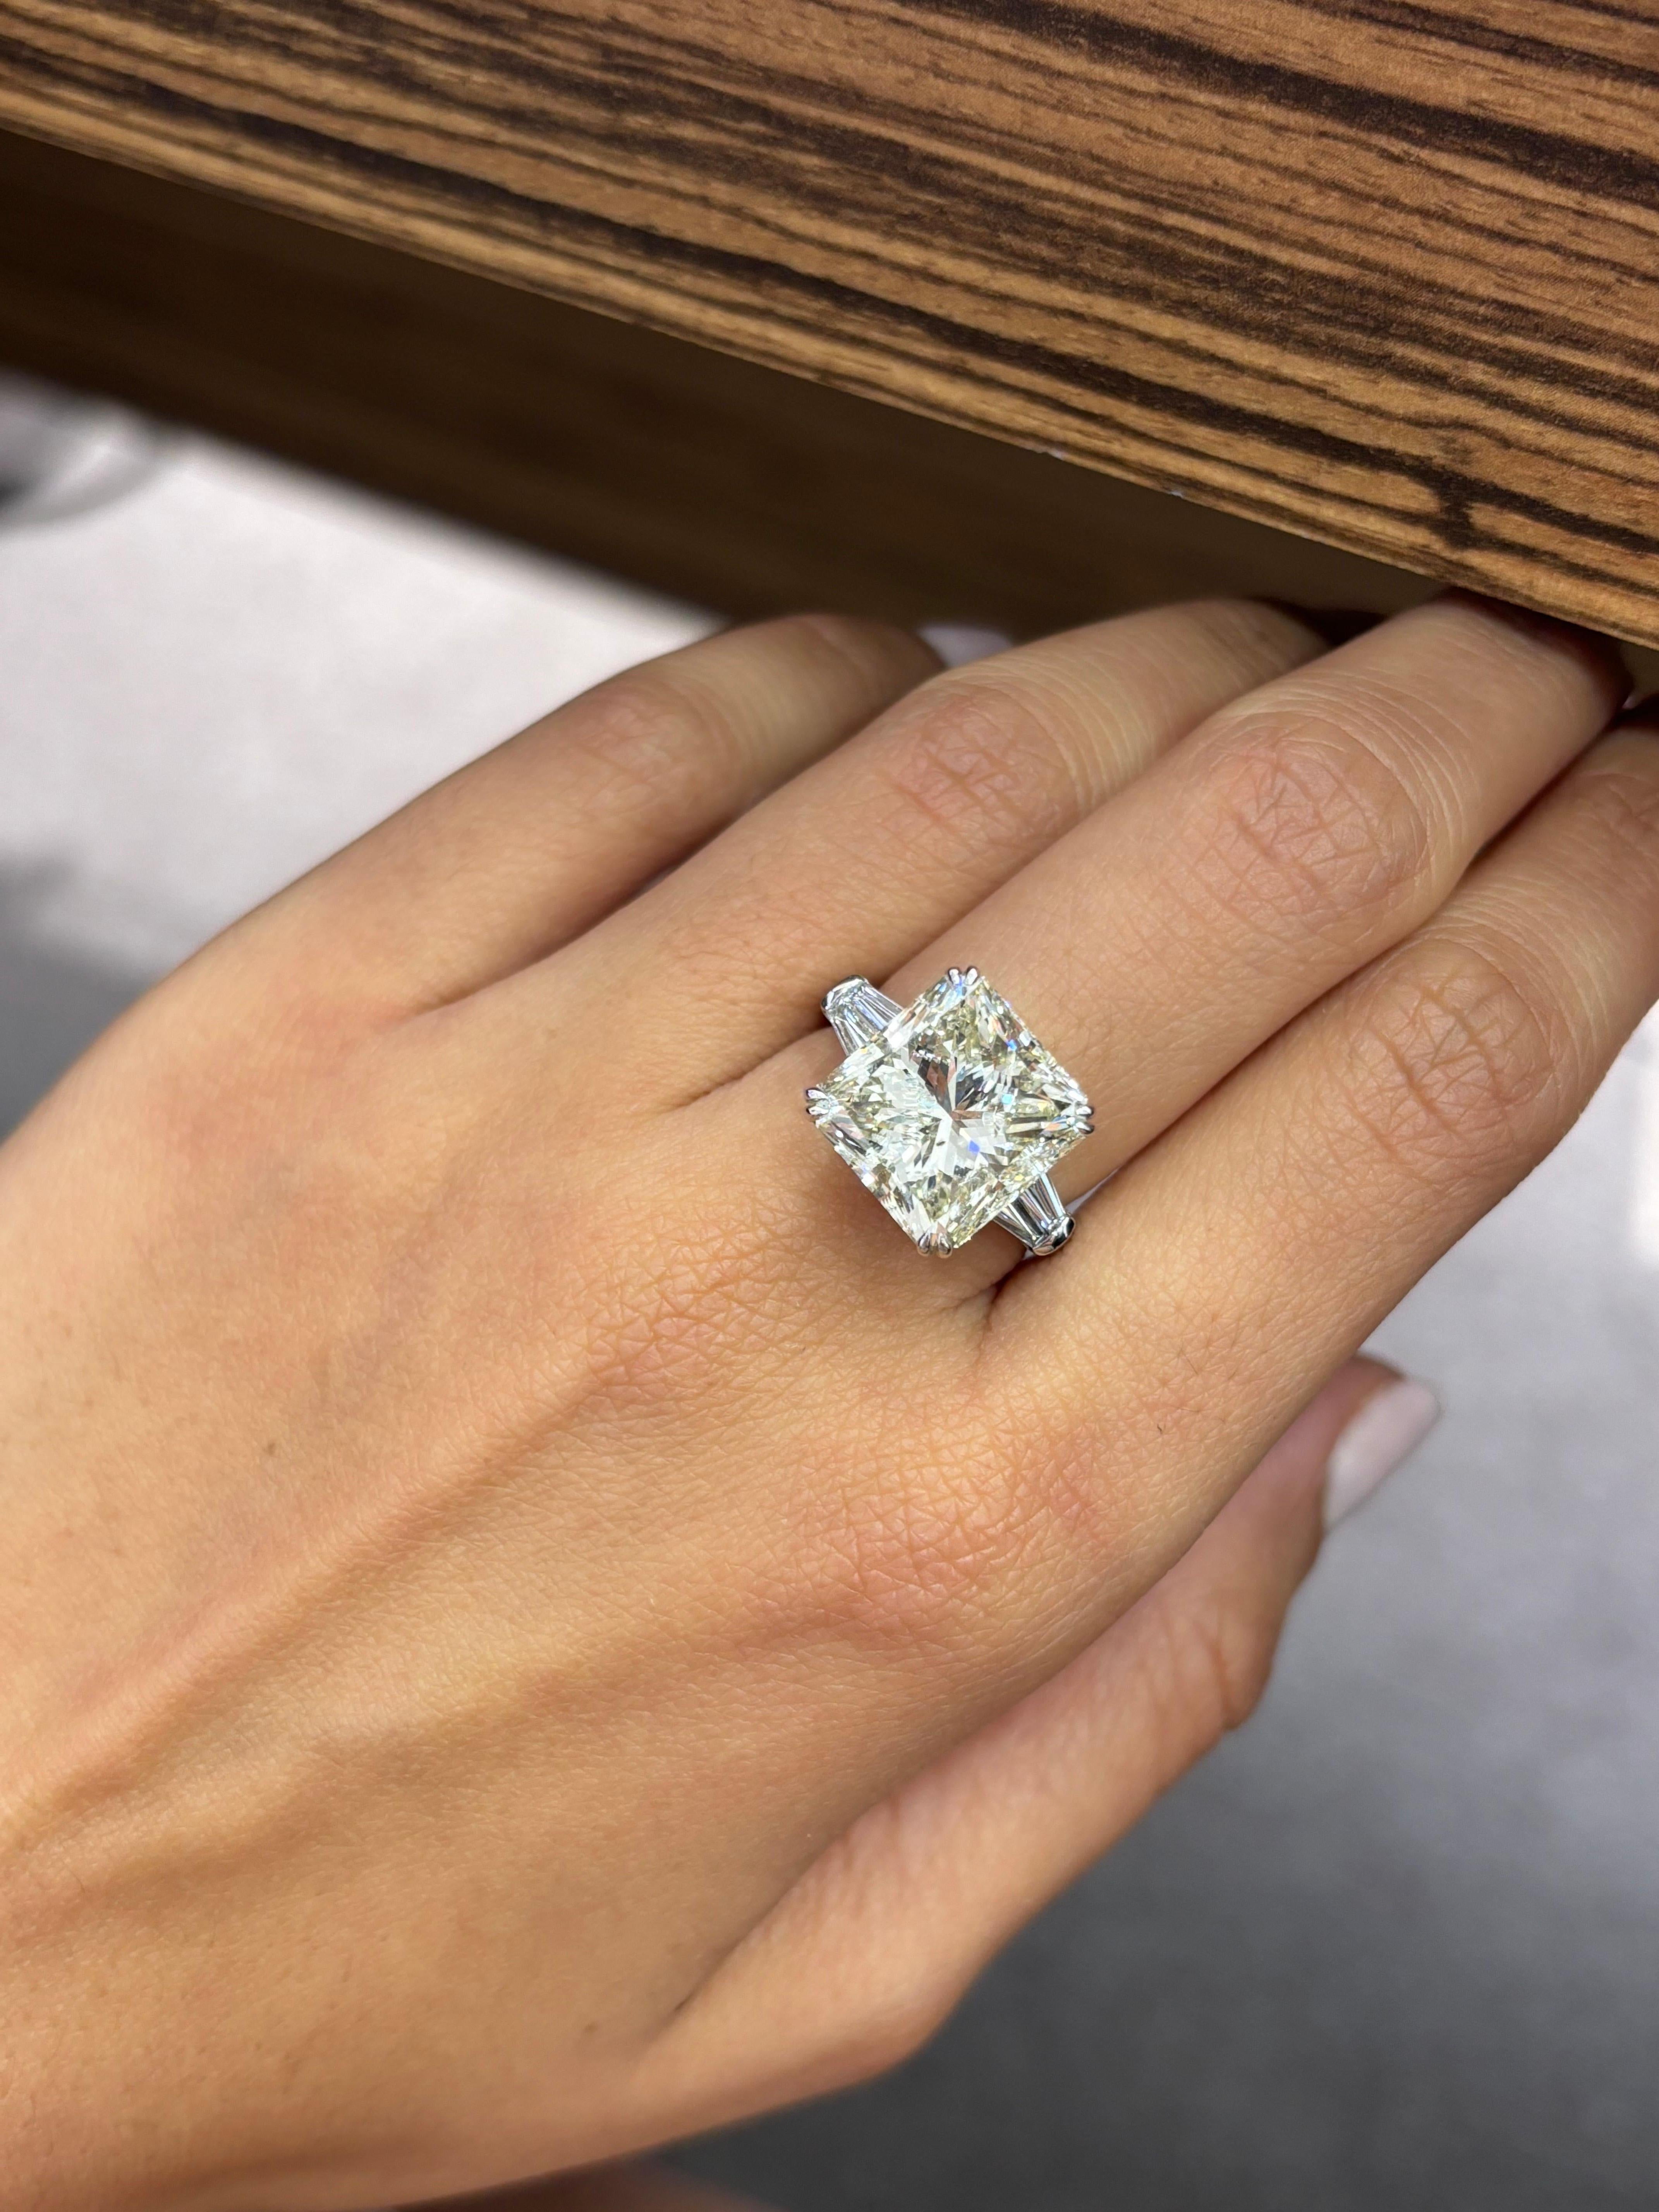 Faites-vous remarquer avec ce magnifique diamant de 10,16 carats à taille rayonnante, serti dans de l'or blanc massif 18 carats. La pierre centrale, un diamant naturel, est certifiée de couleur L et de pureté SI2. Mais la pierre est d'une grande